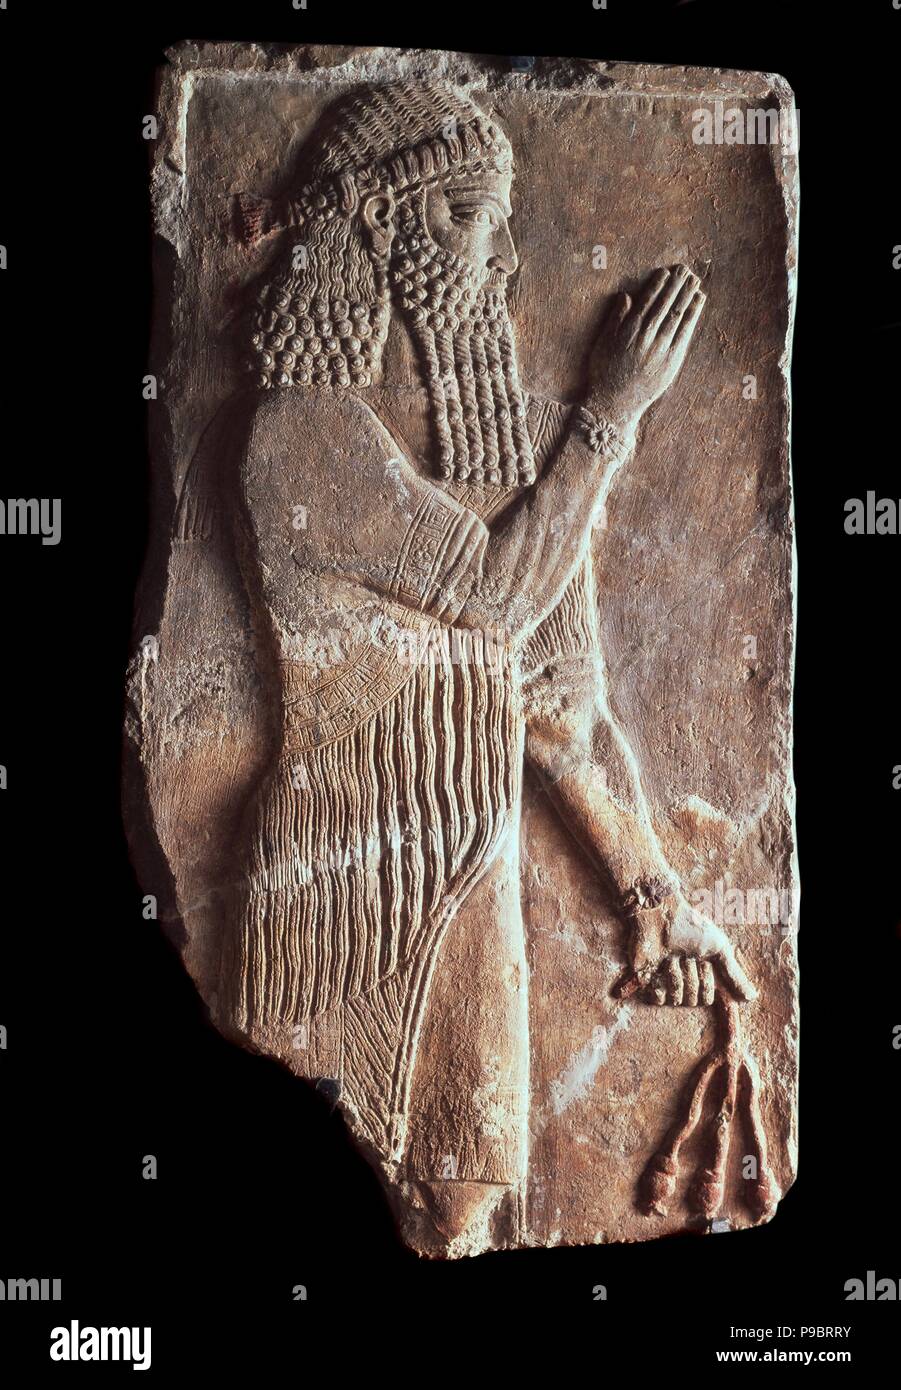 Priester mit einem Zweig von pomergranate Baum. Detail einer Entlastung vom Palast der Assyrische König Sargon II. Museum: Staatliche Eremitage, St. Petersburg. Stockfoto